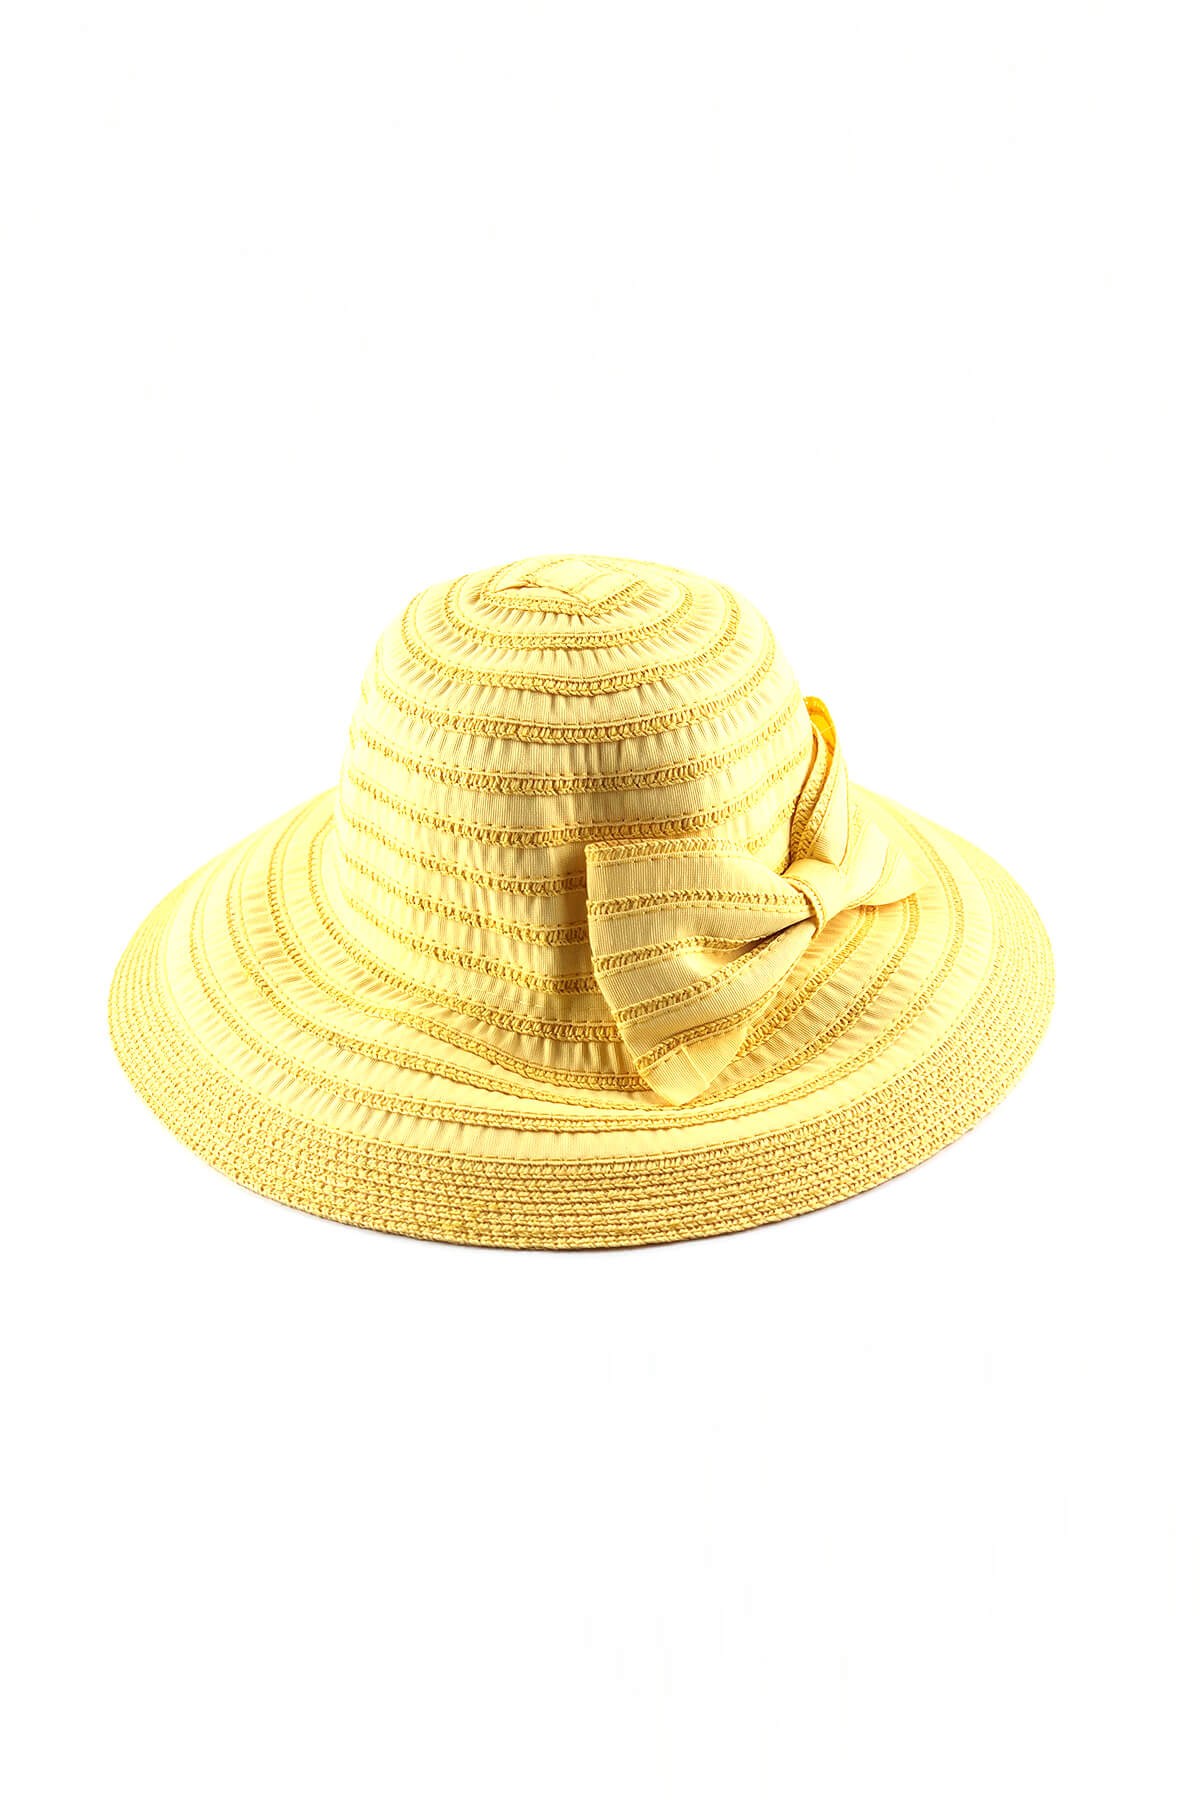 HaşemaHaşema Sarı Fiyonklu Şapka